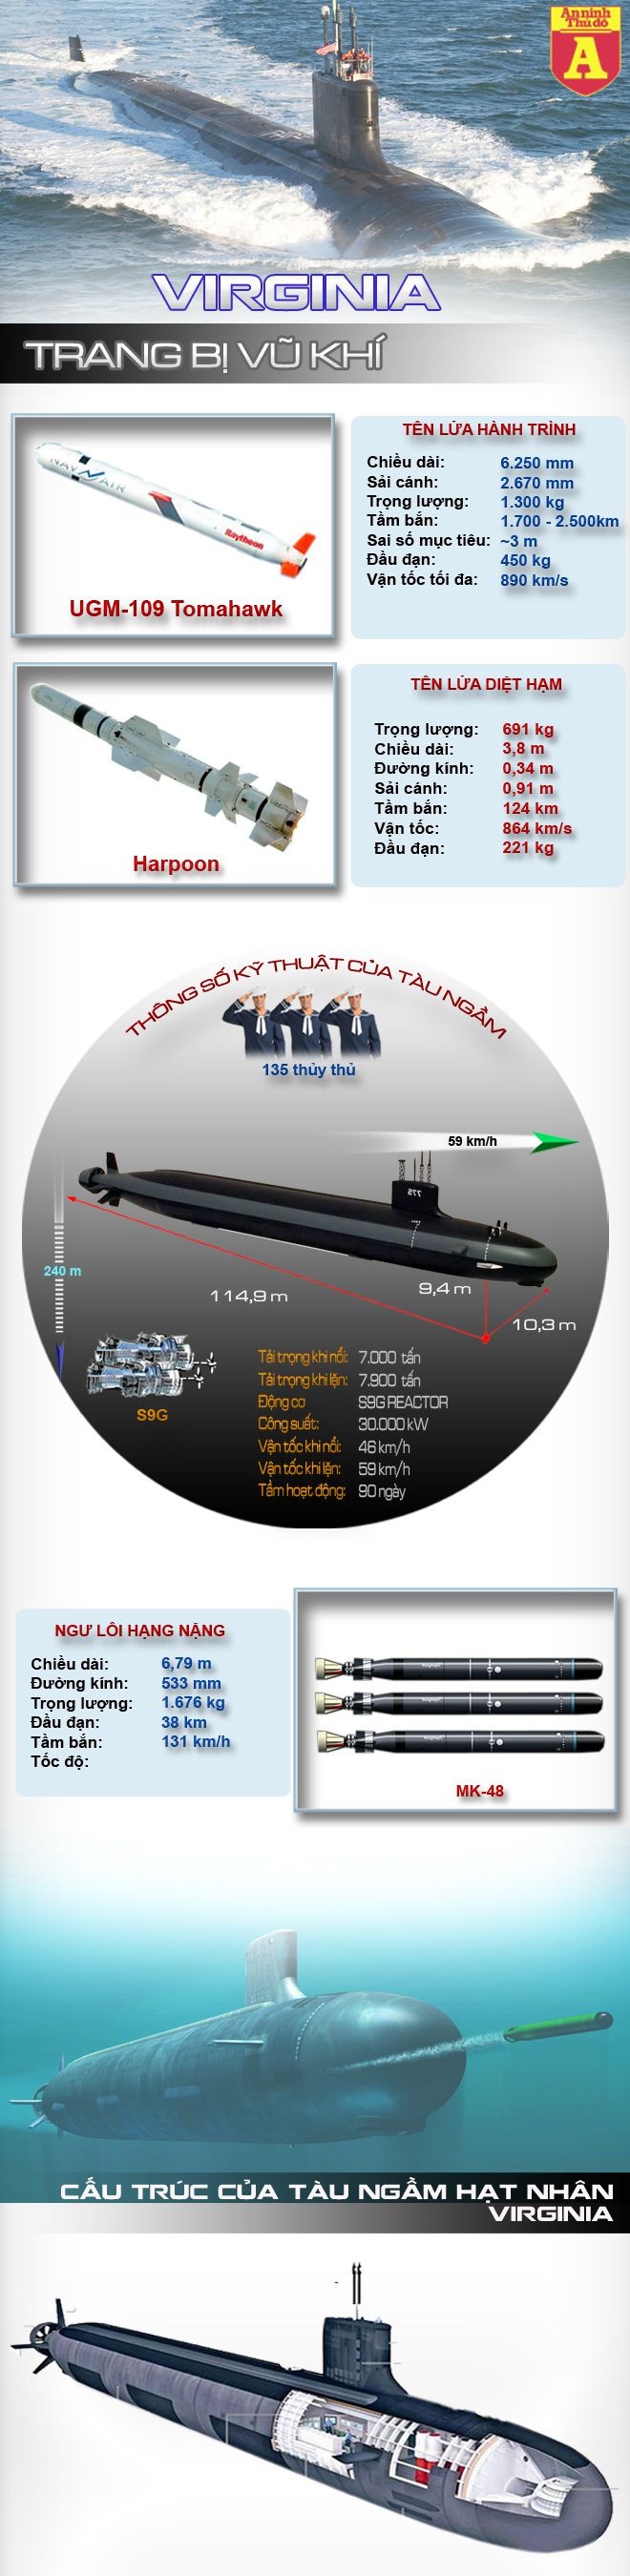 [Infographic] Siêu tàu ngầm hạt nhân hiện đại nhất của Hải quân Mỹ ảnh 1